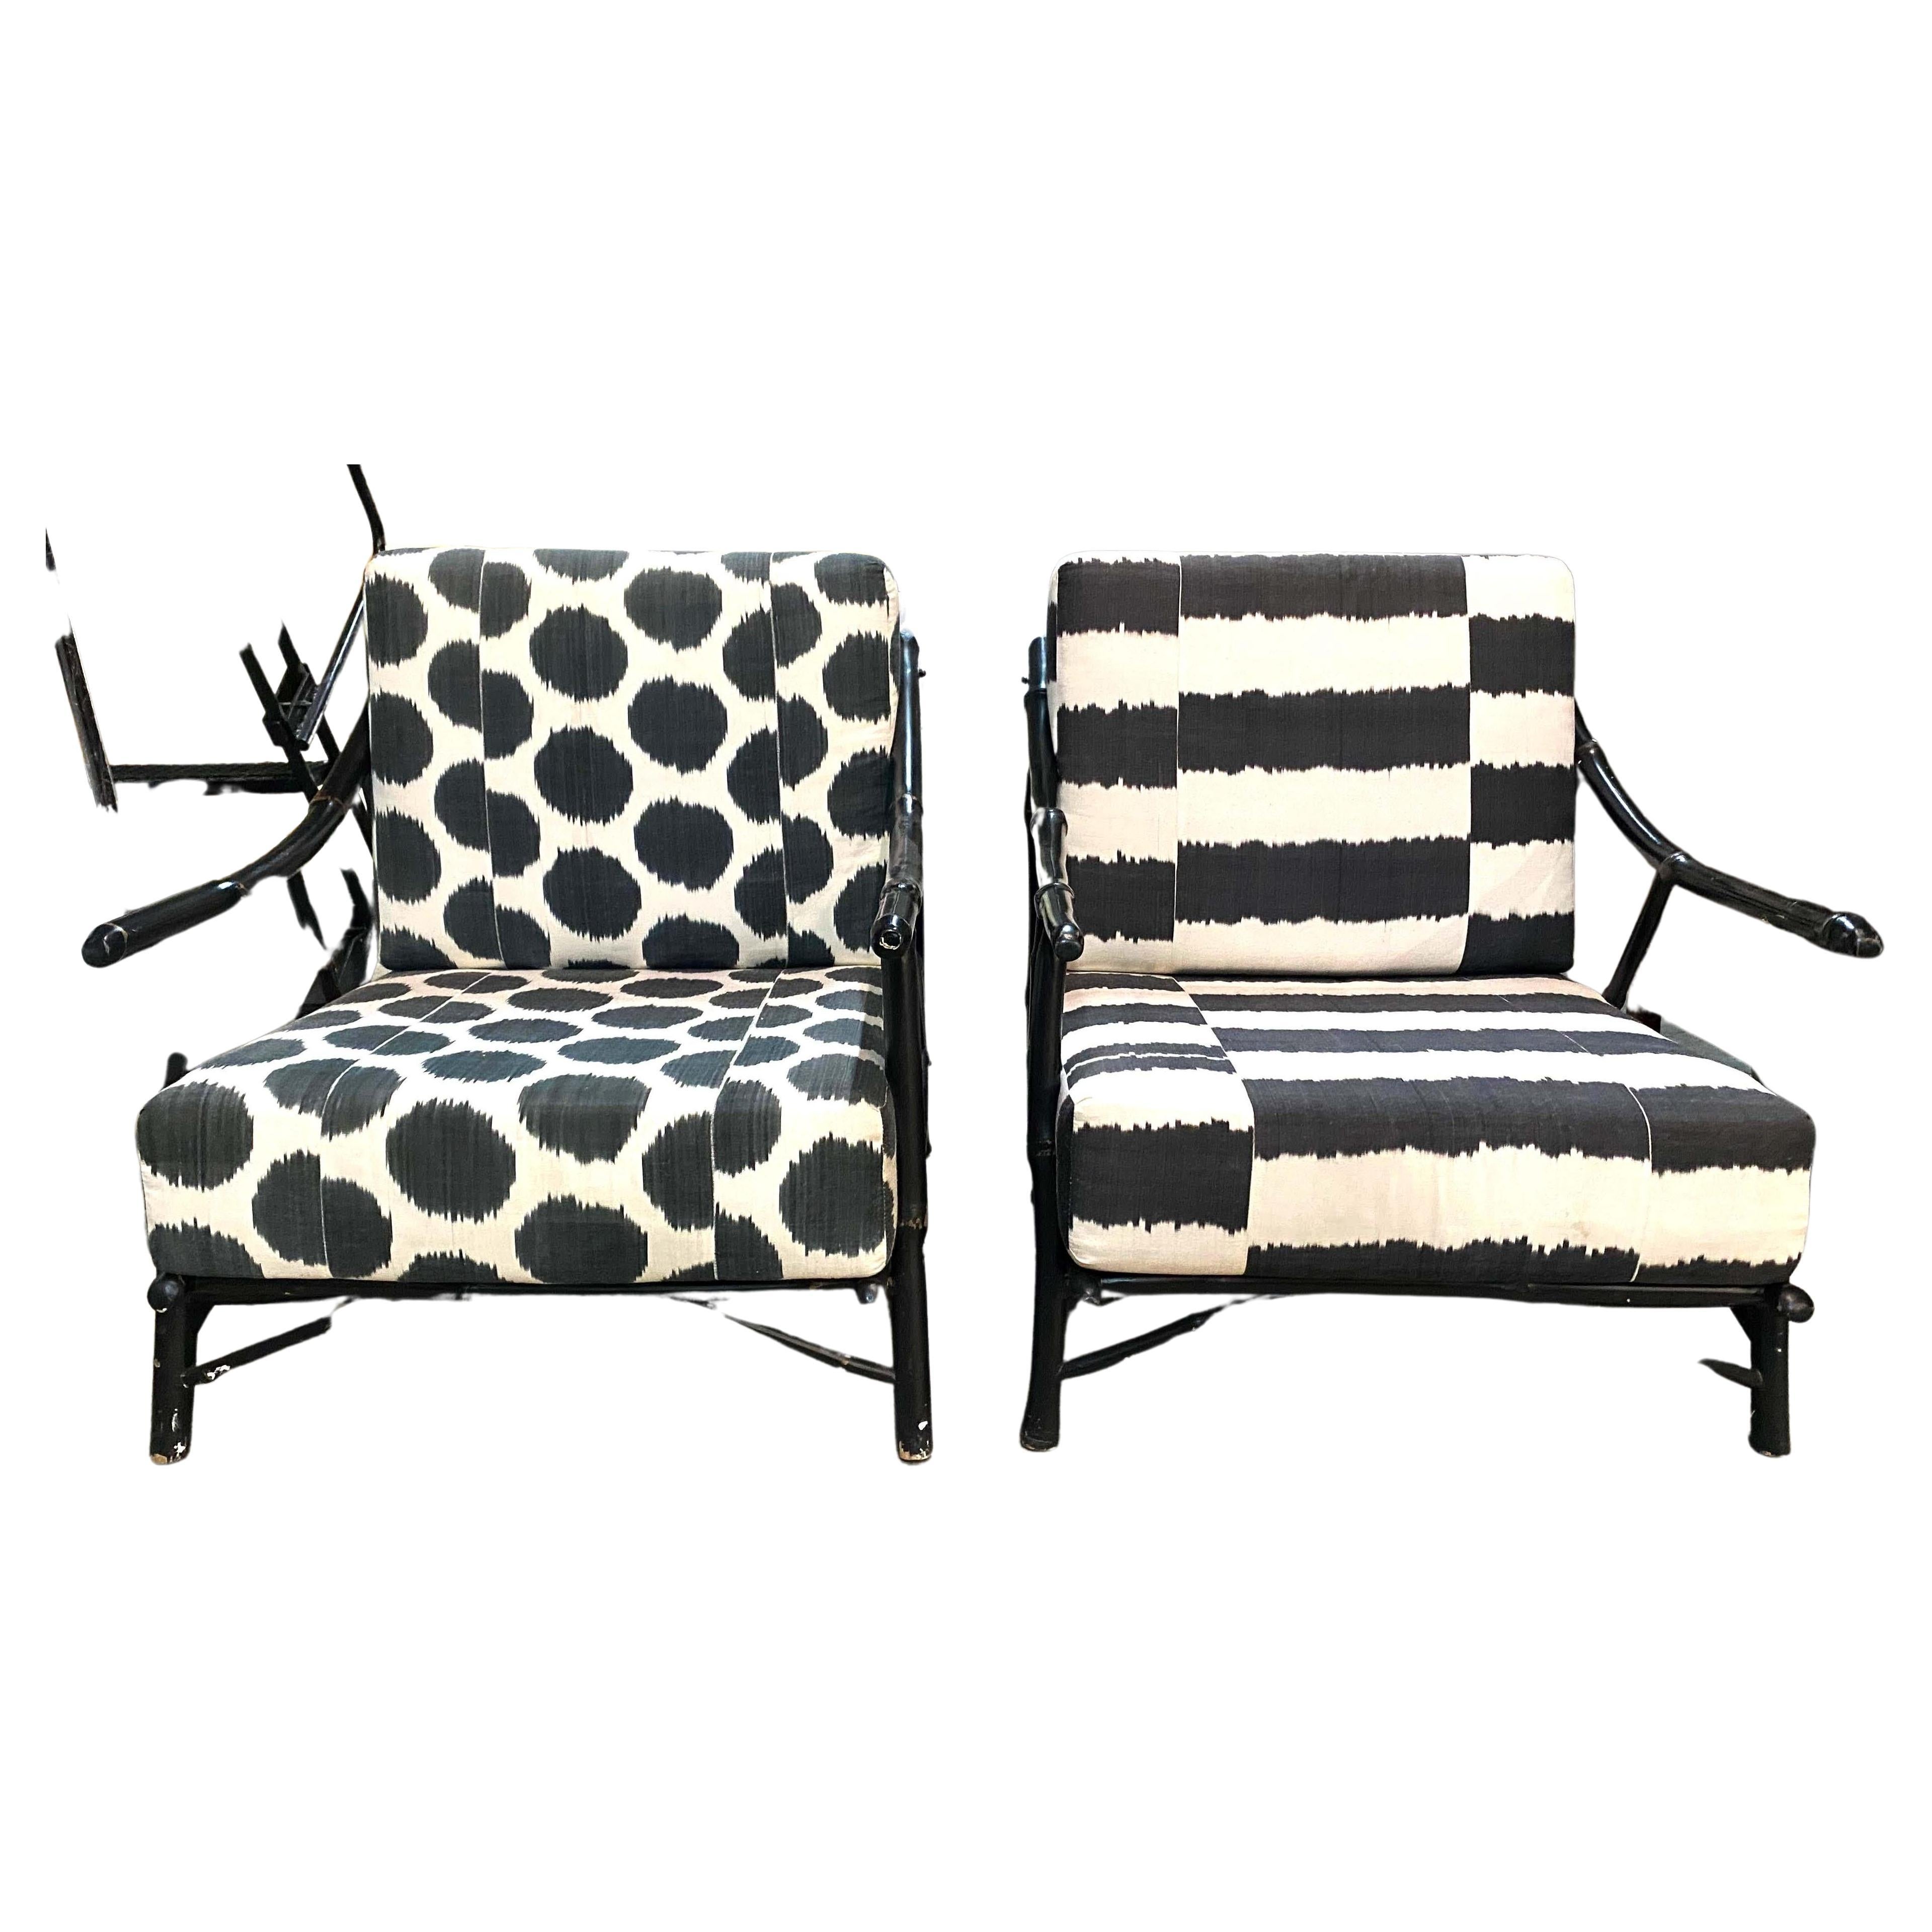 Cette chaise longue en bambou noir et rotin de style Chippendale est agrémentée de housses de coussin personnalisées en tissu noir et blanc de style ikat, l'une avec un tissu rayé, l'autre avec un tissu à motifs de pois. Chaise longue fabriquée à la